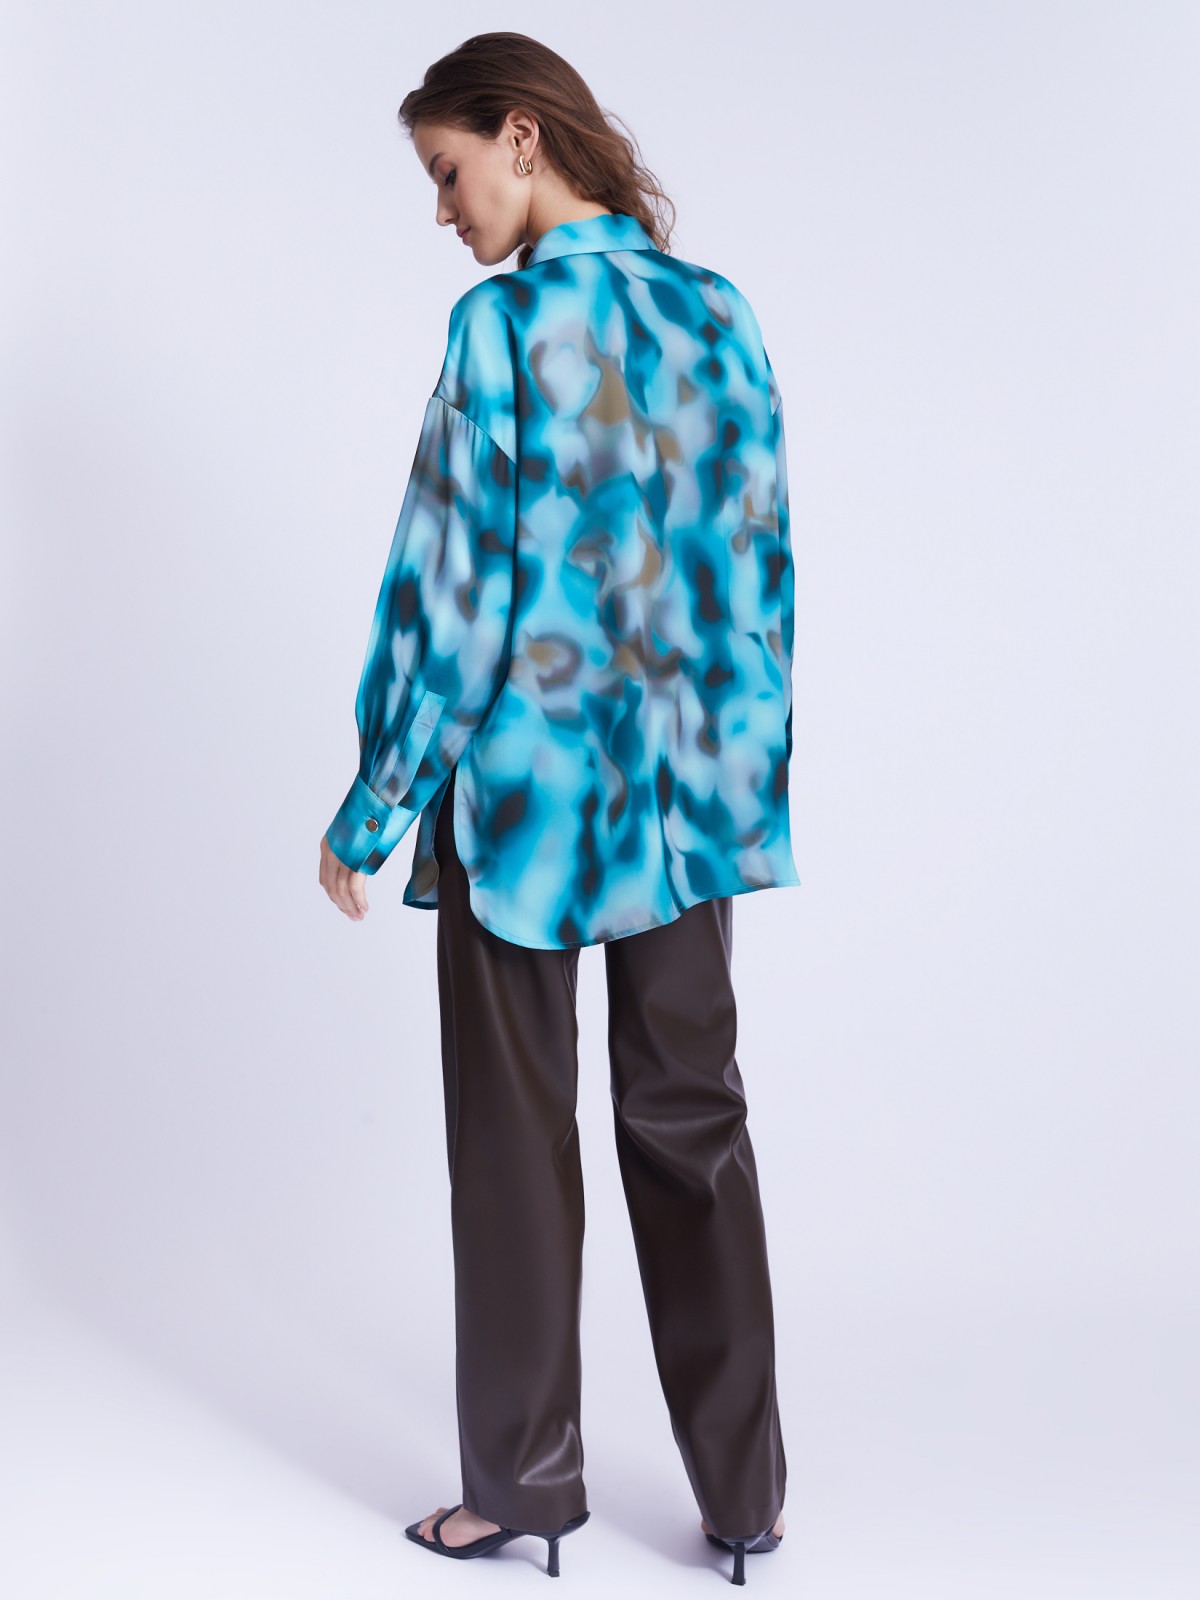 Атласная блузка-рубашка оверсайз силуэта с акцентным принтом zolla 22333117Y041, цвет бирюзовый, размер L - фото 6